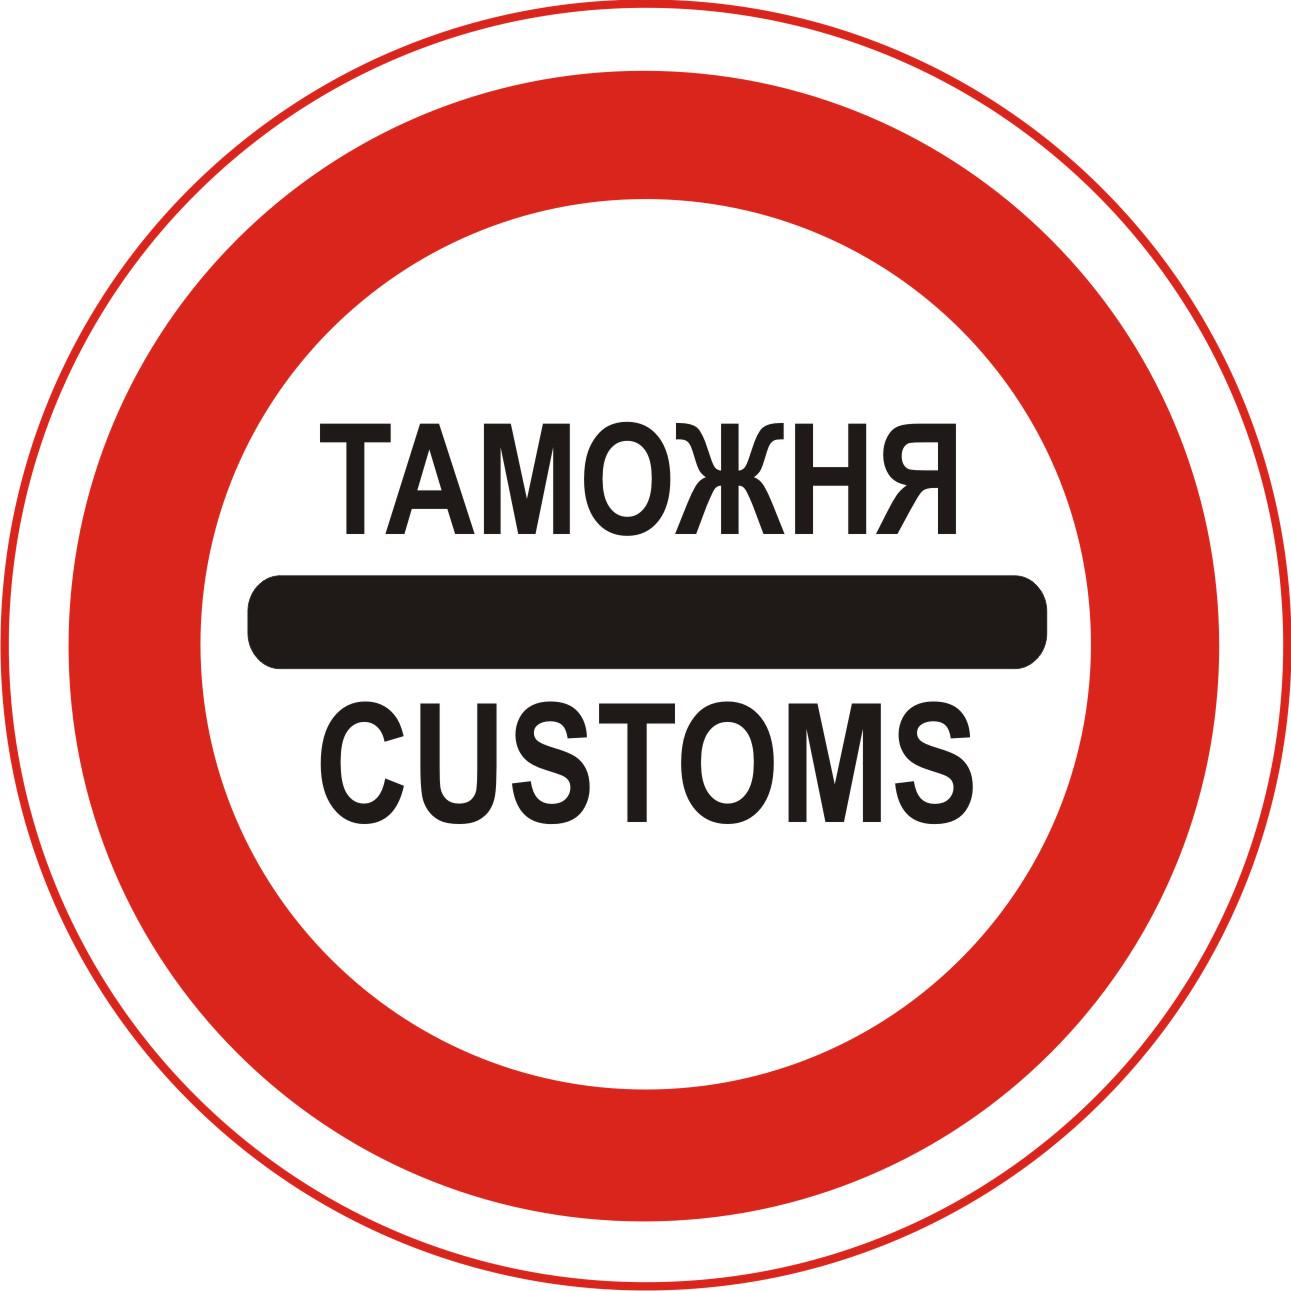 Customs png